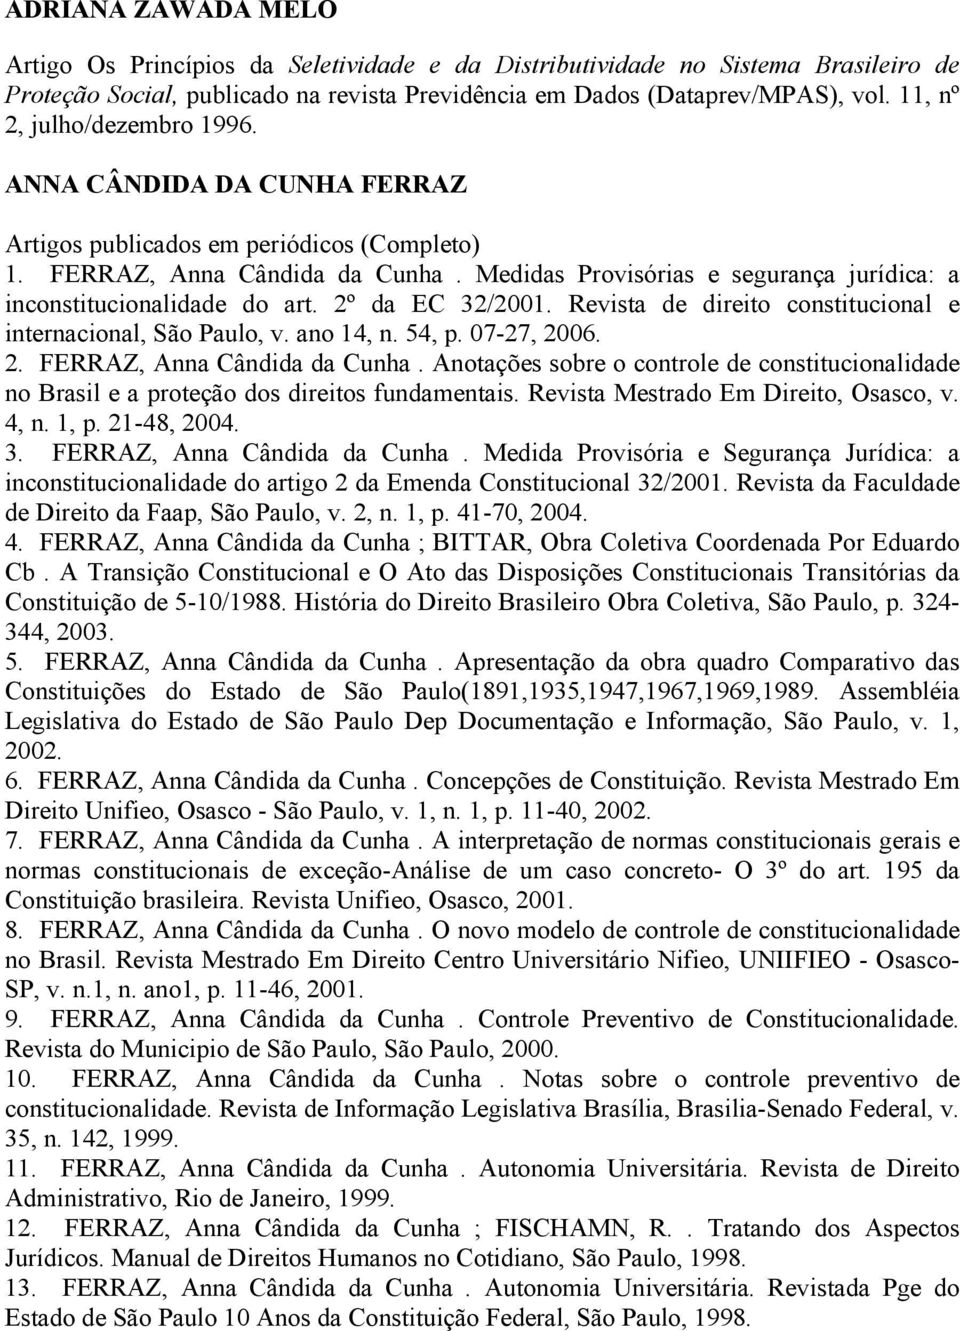 Revista de direito constitucional e internacional, São Paulo, v. ano 14, n. 54, p. 07-27, 2006. 2. FERRAZ, Anna Cândida da Cunha.